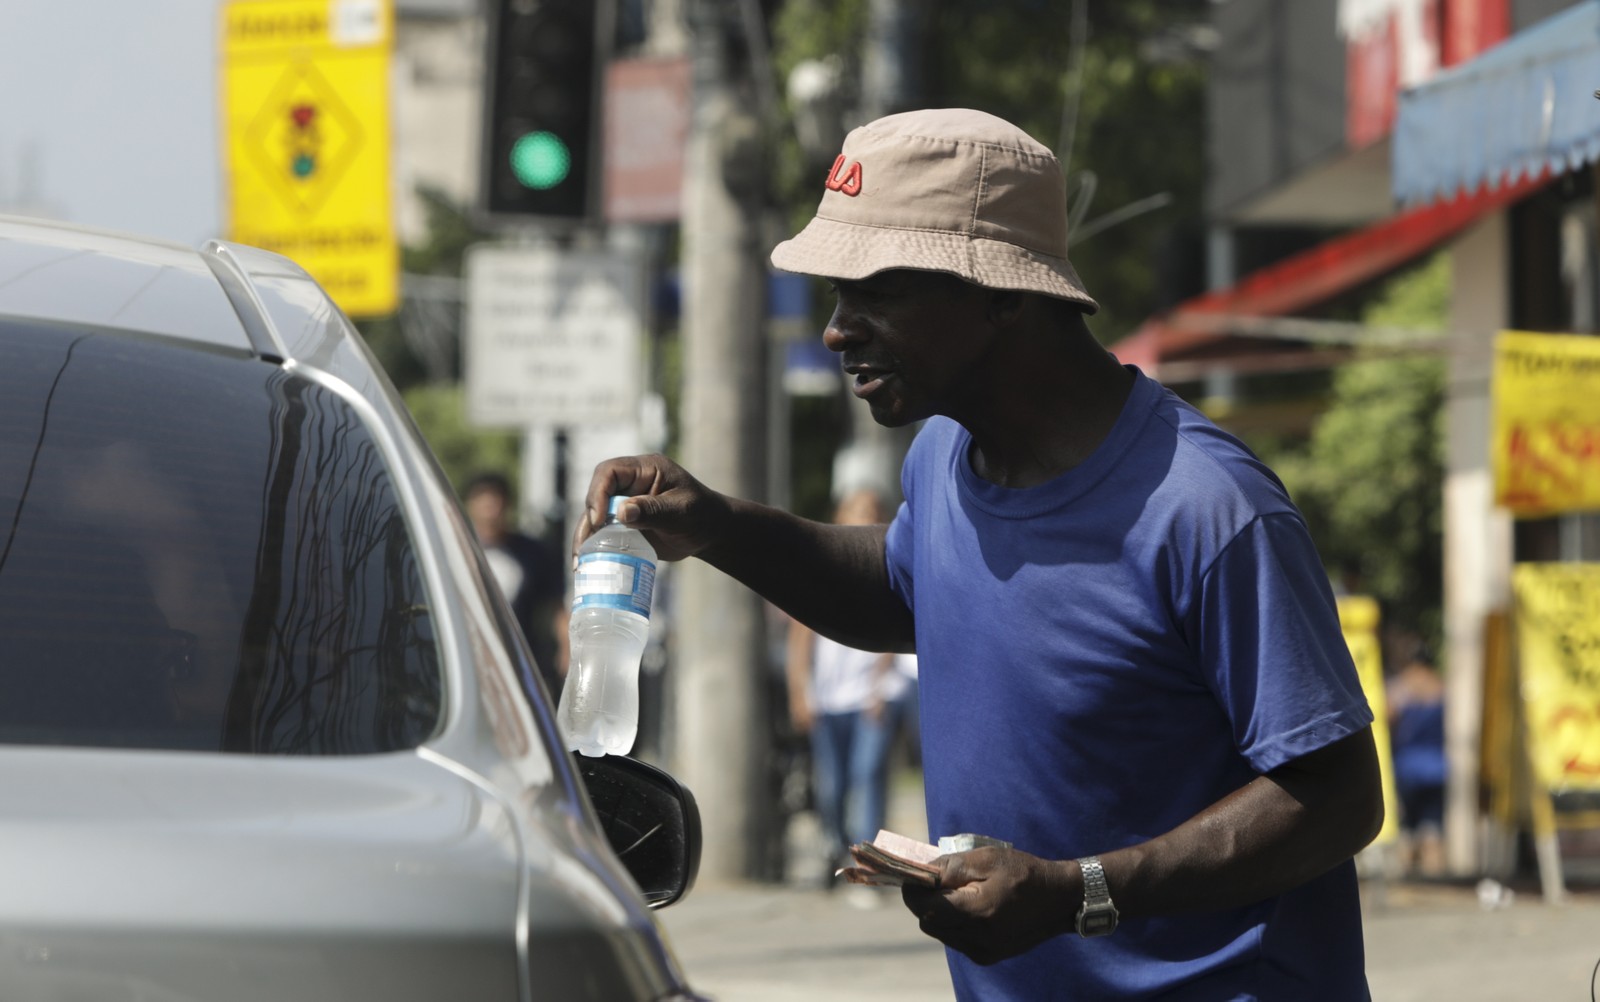  A cena de ambulantes vendendo água mineral é uma constante nas esquinas e ruas da cidade  — Foto: Gabriel de Paiva